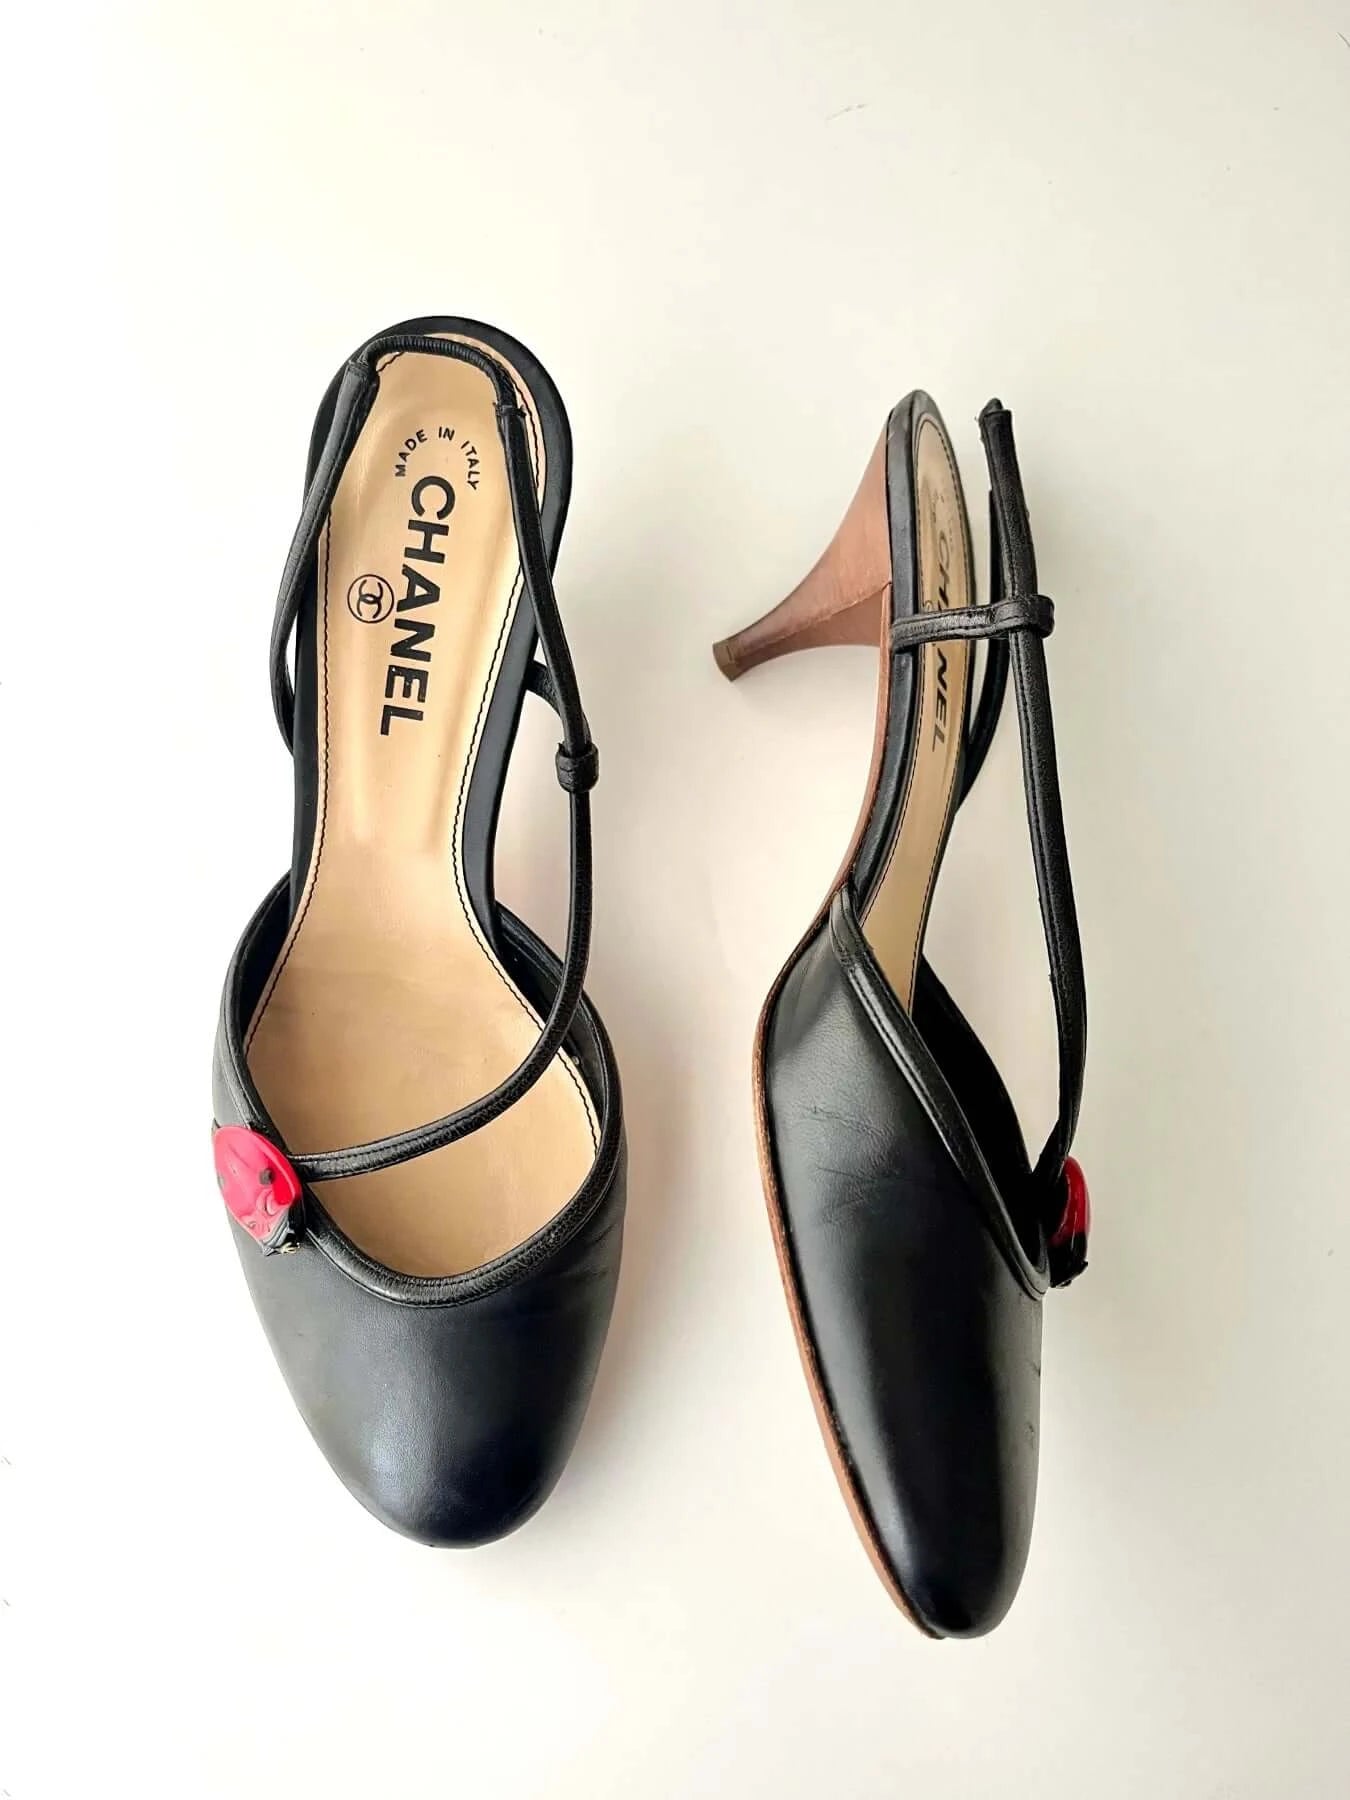 Chanel Slingback Heels with Ladybug